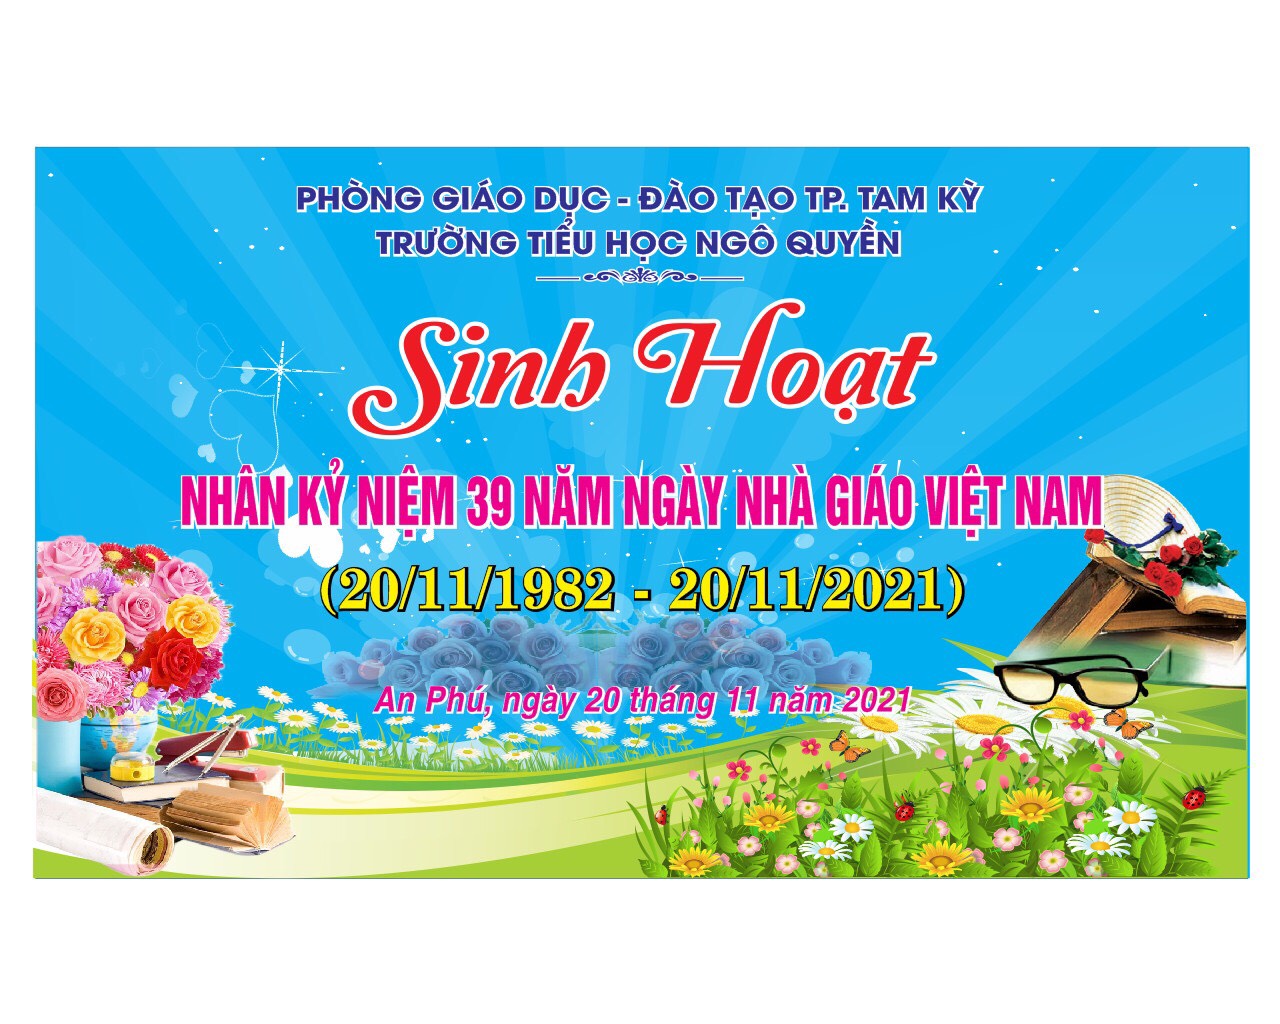 Mãn nhãn mẫu báo tường ngày Nhà giáo Việt Nam 2011 của học trò xứ Thanh